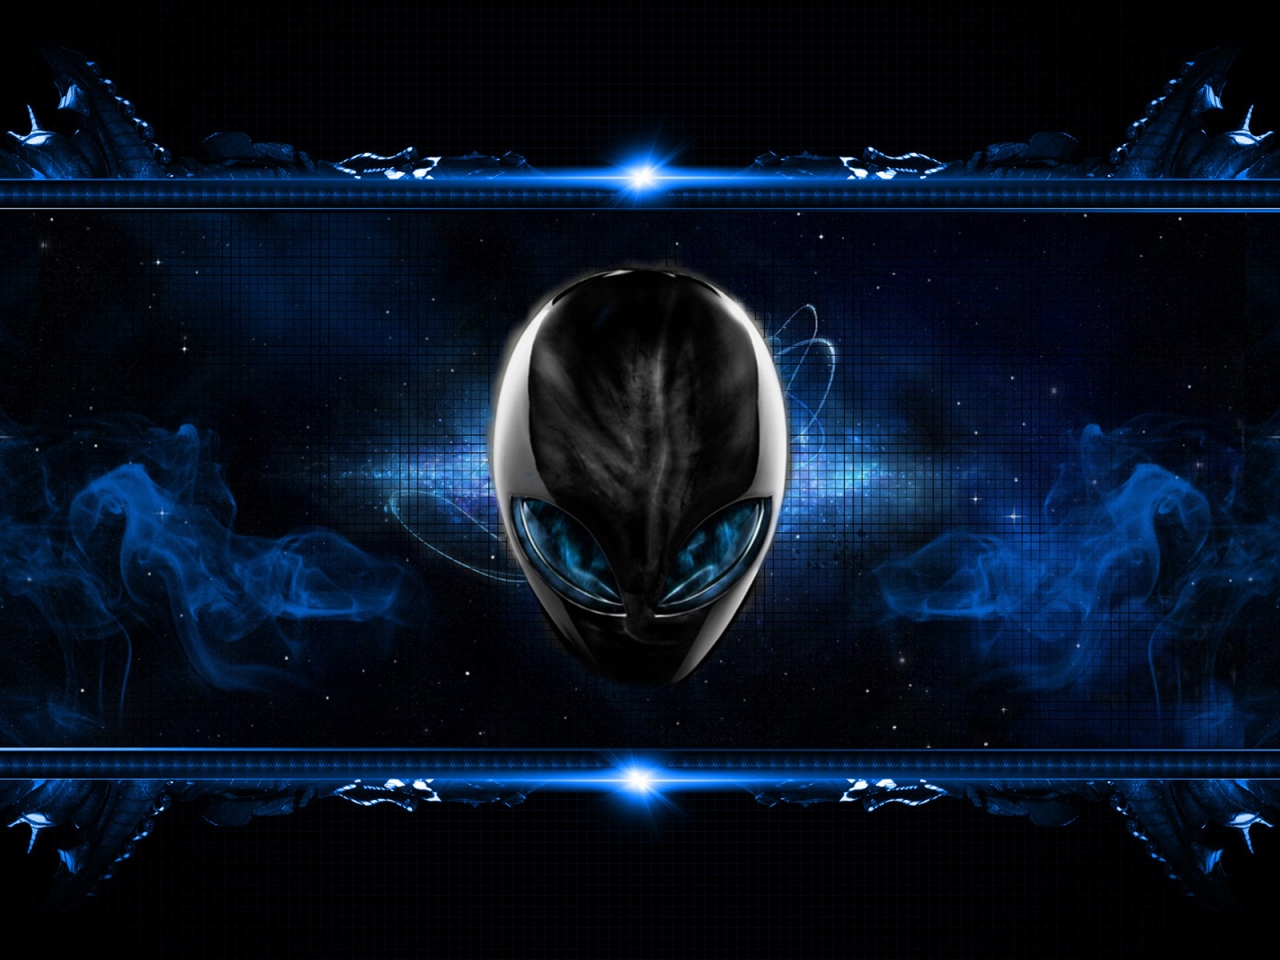 Blue Alien for 1280 x 960 resolution